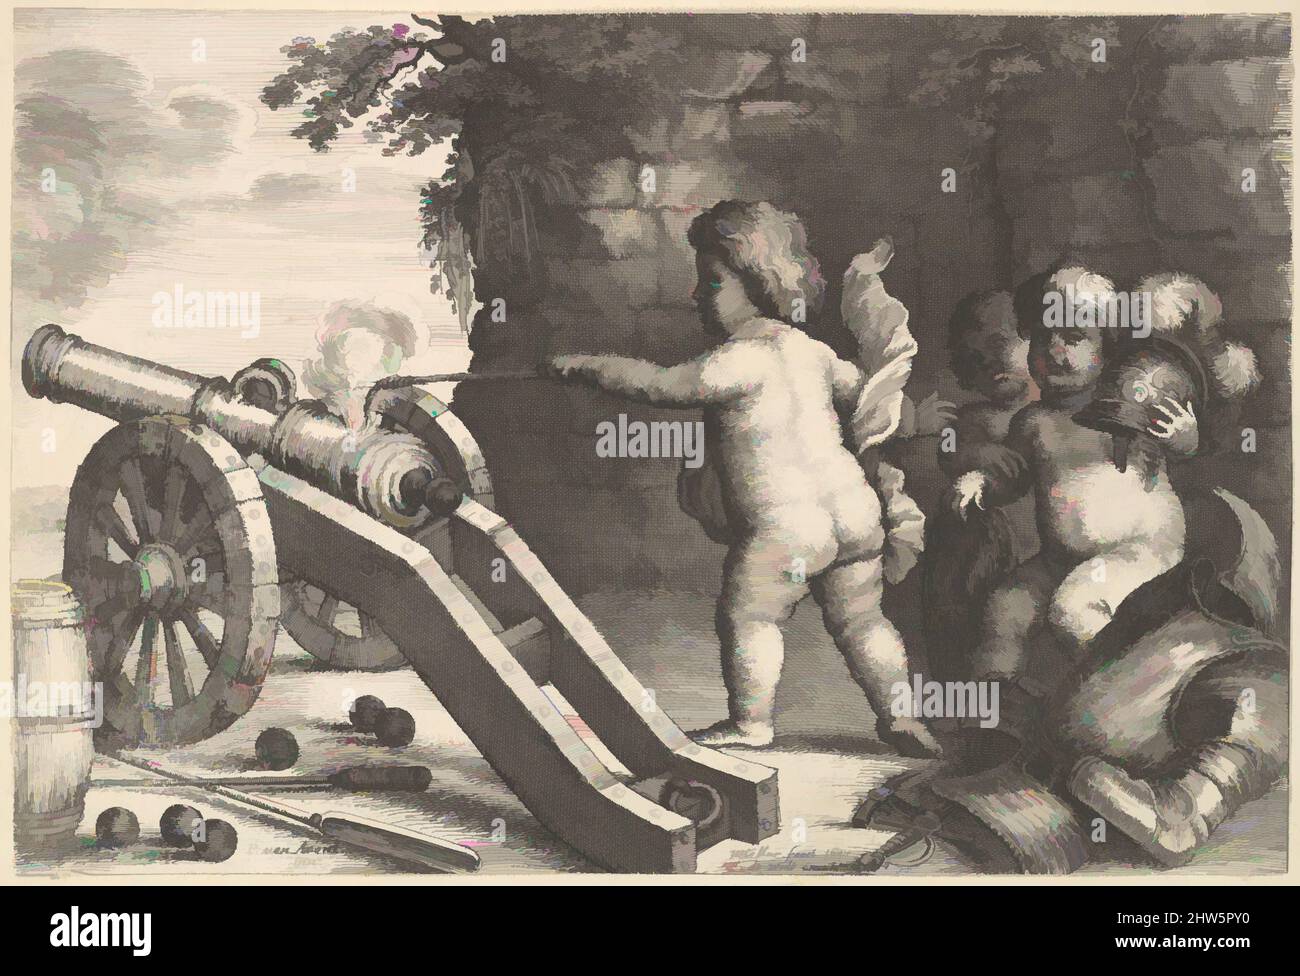 Art Inspired by Fire (The Four Elements), 1647, Radierung, Drucke, After Pieter van Avont (Flämisch, 1599–1652, Klassische Werke, die von Artotop mit einem Schuss Moderne modernisiert wurden. Formen, Farbe und Wert, auffällige visuelle Wirkung auf Kunst. Emotionen durch Freiheit von Kunstwerken auf zeitgemäße Weise. Eine zeitlose Botschaft, die eine wild kreative neue Richtung verfolgt. Künstler, die sich dem digitalen Medium zuwenden und die Artotop NFT erschaffen Stockfoto